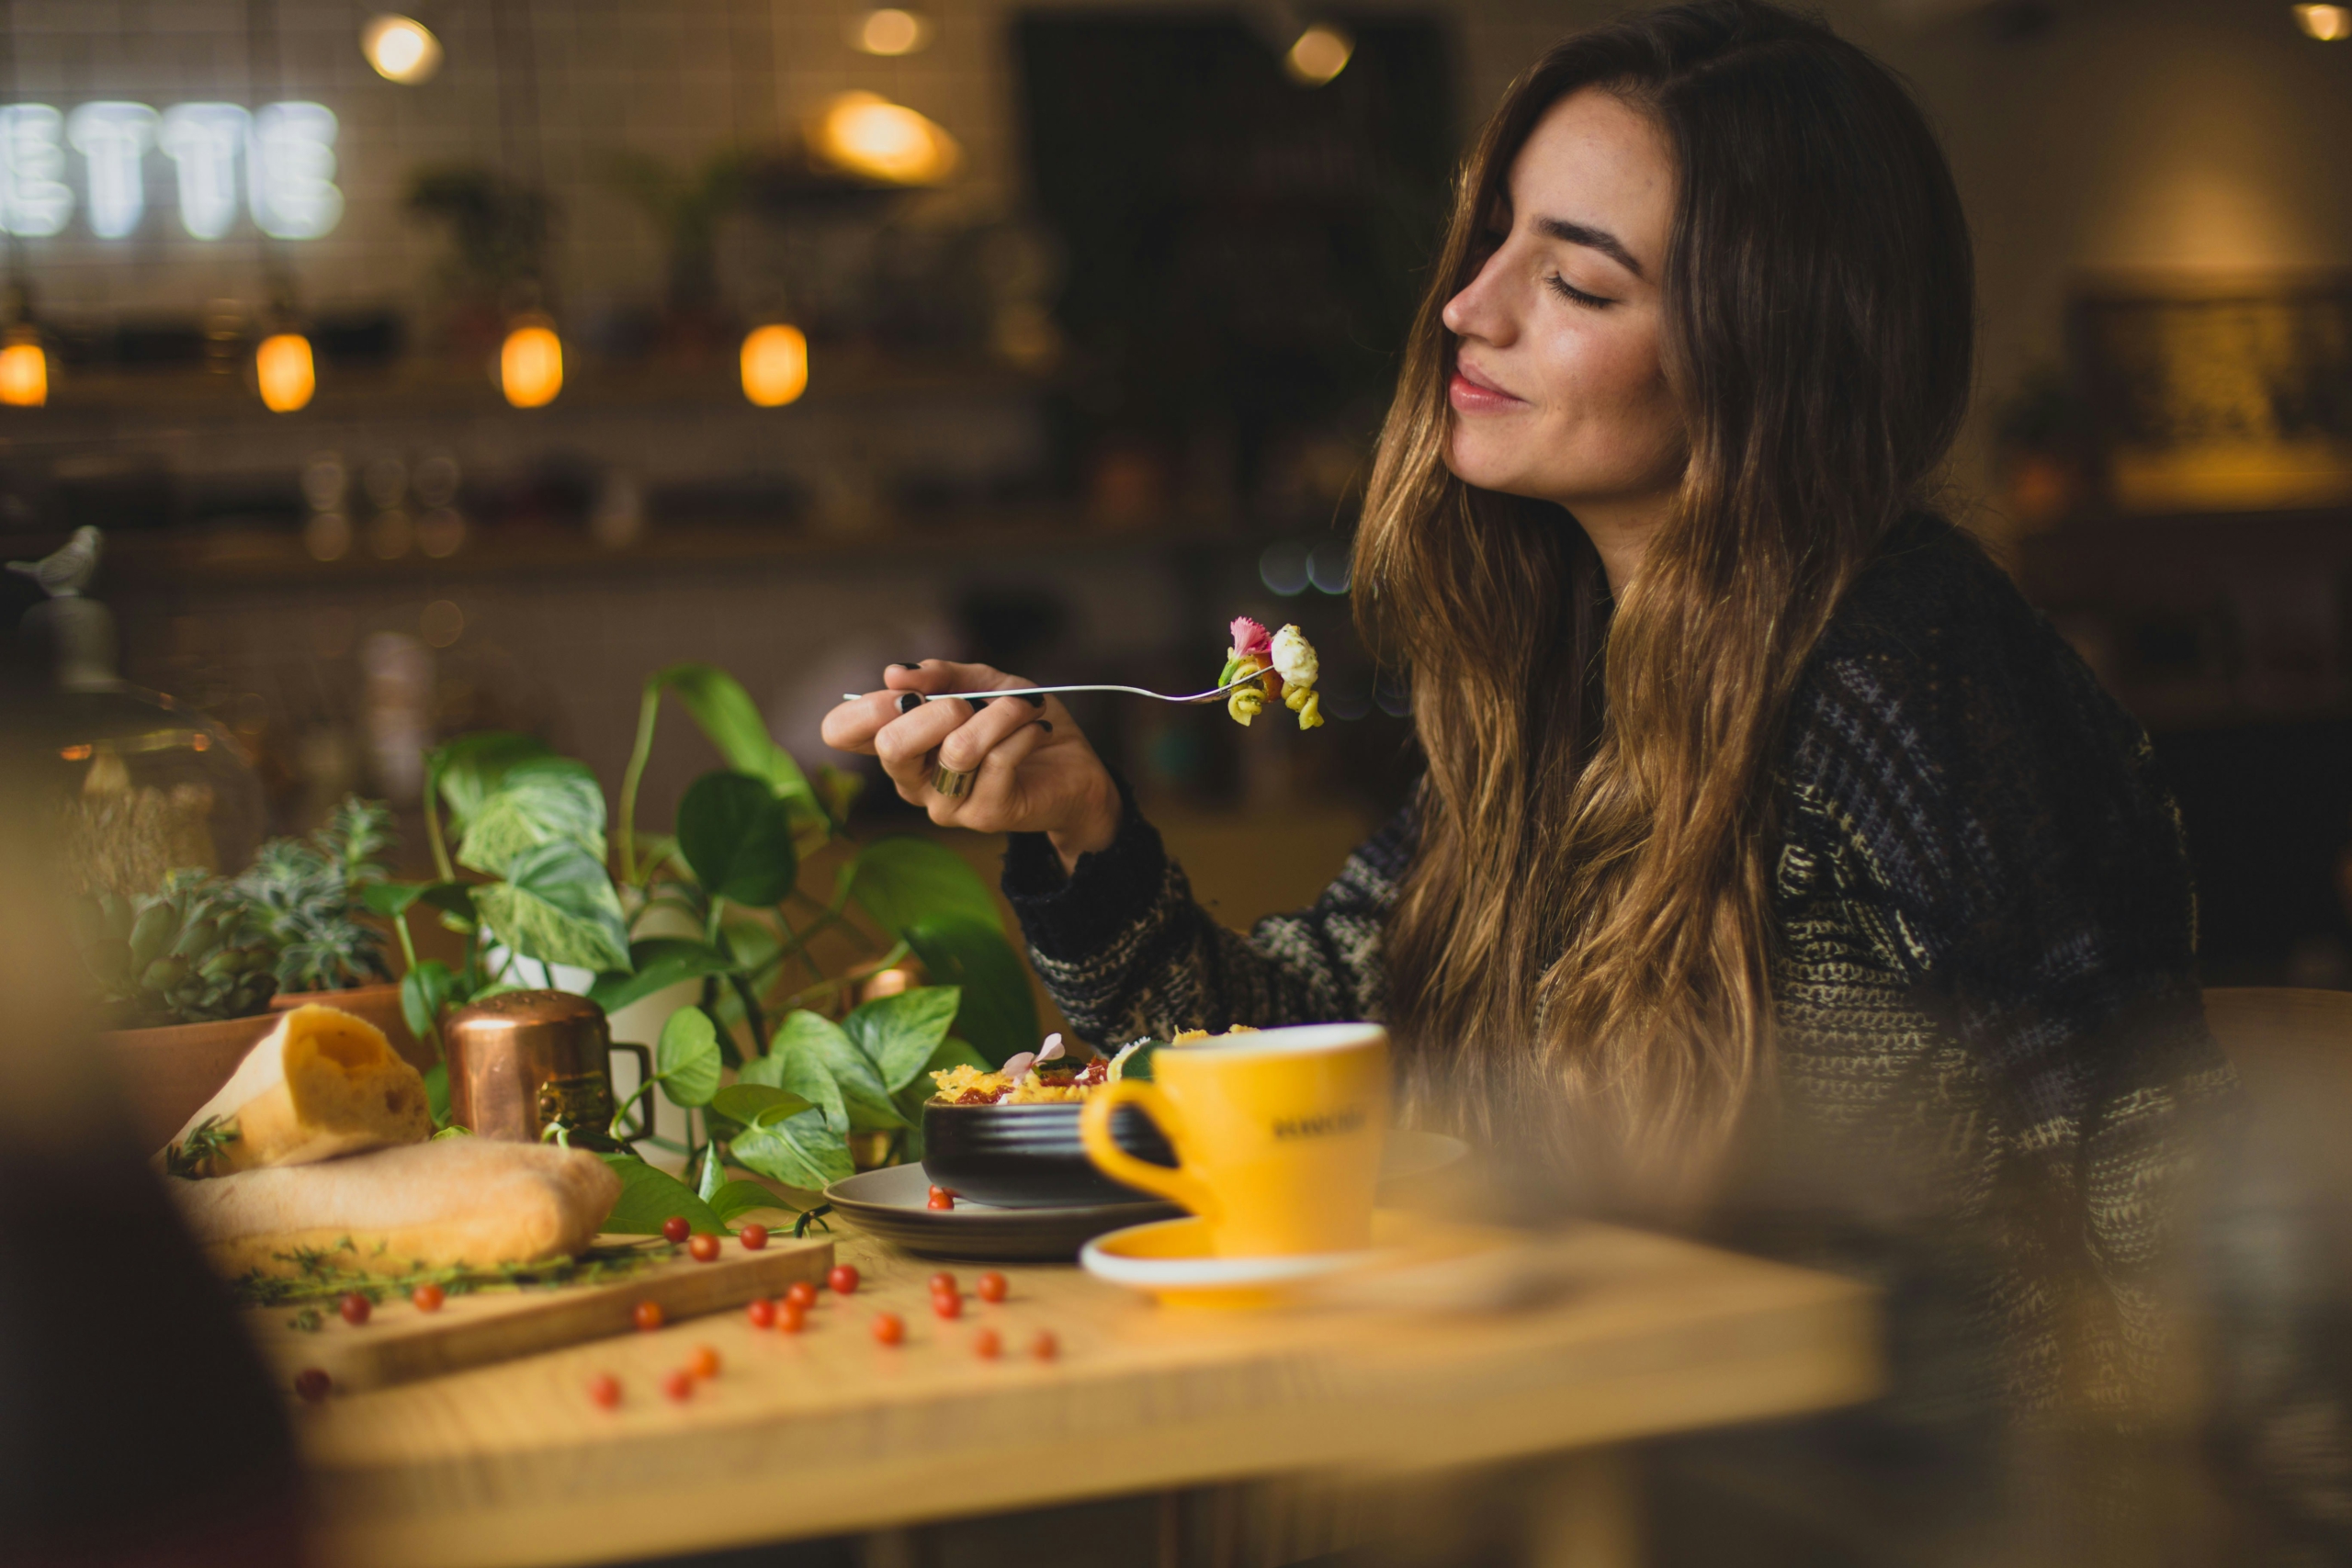 essen mit guten gefühl - vom emotionalen essen zum intuitiven essen